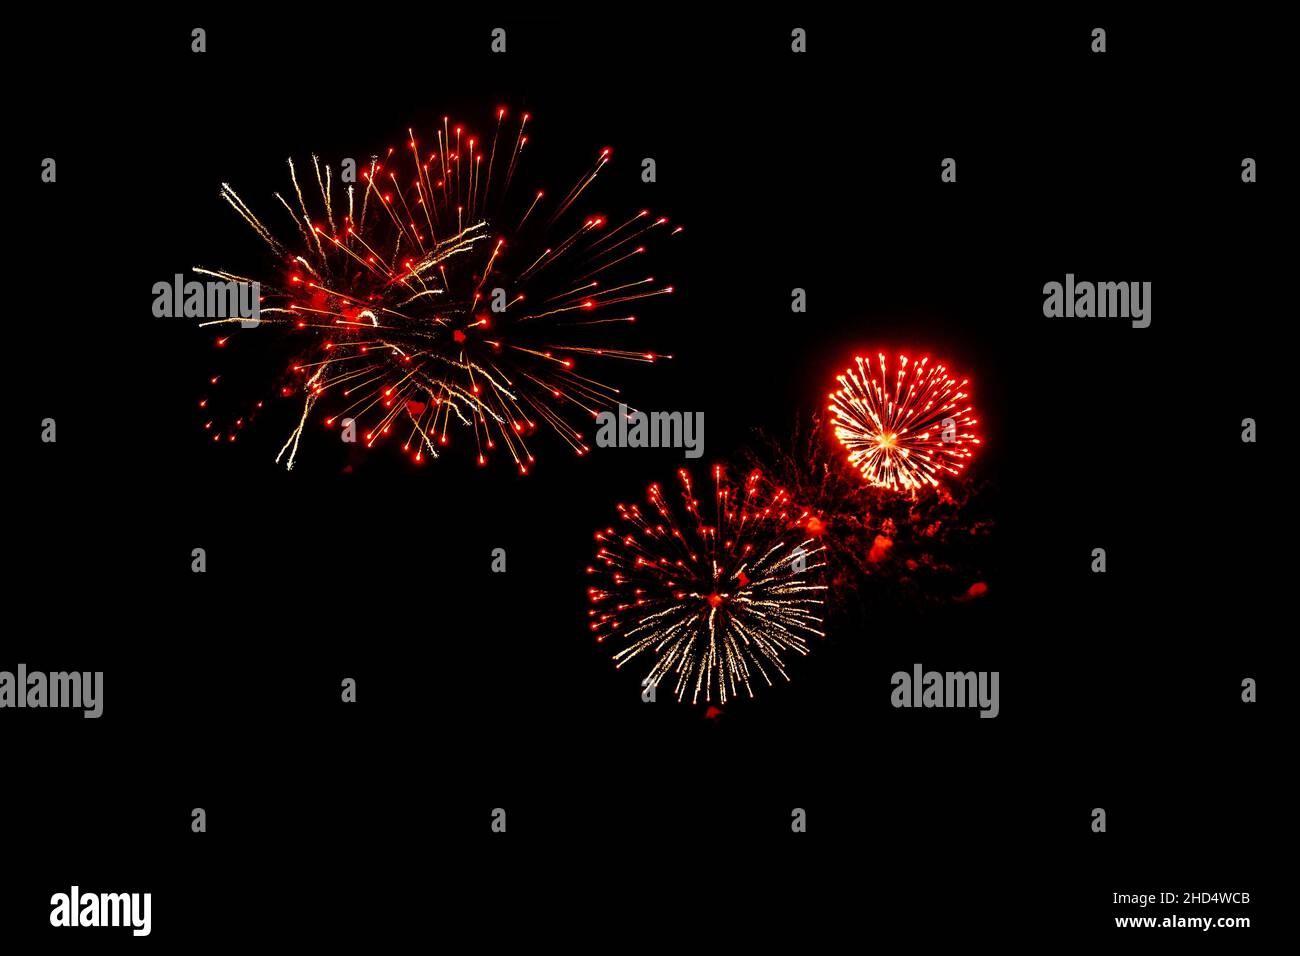 Rotes Feuerwerk auf schwarzem Hintergrund. Festliches weihnachtliches Beleuchtungselement zur Dekoration. Funken. Feuerwerkskörper sind Eine Klasse explosiver pyrotechnischer Geräte Stockfoto